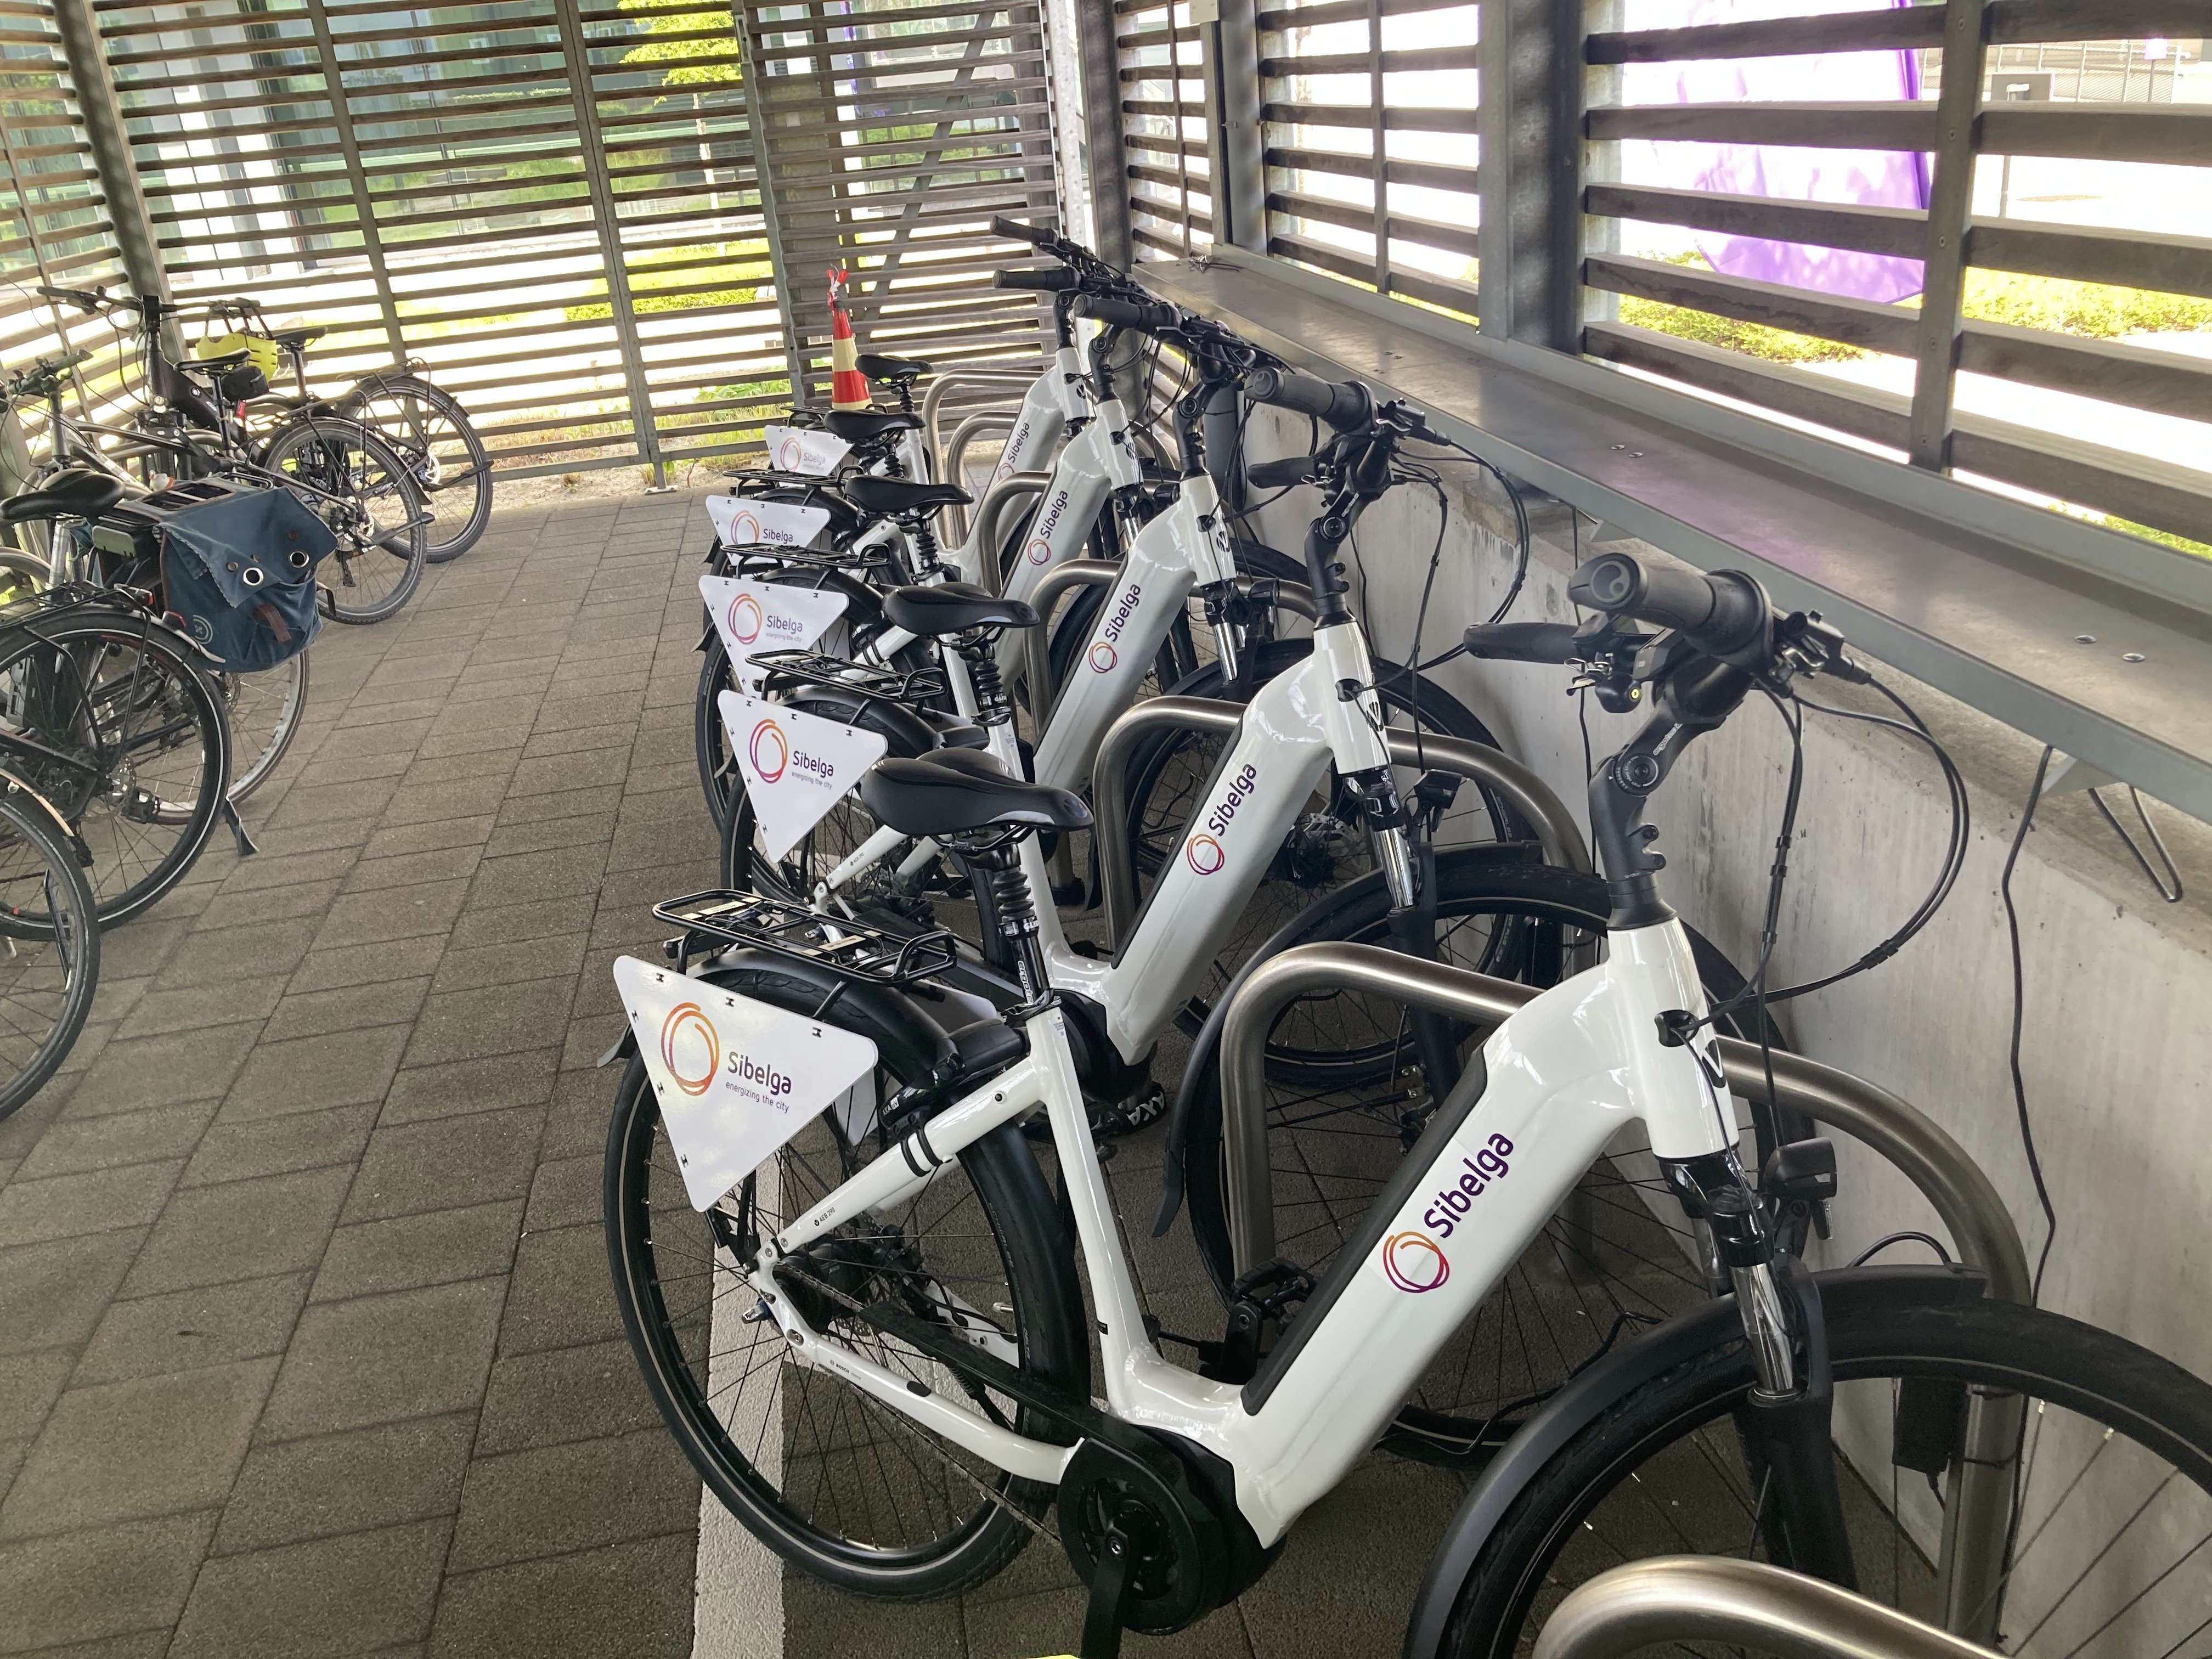 Exemple de parking couvert proposé dans notre service de location de vélo